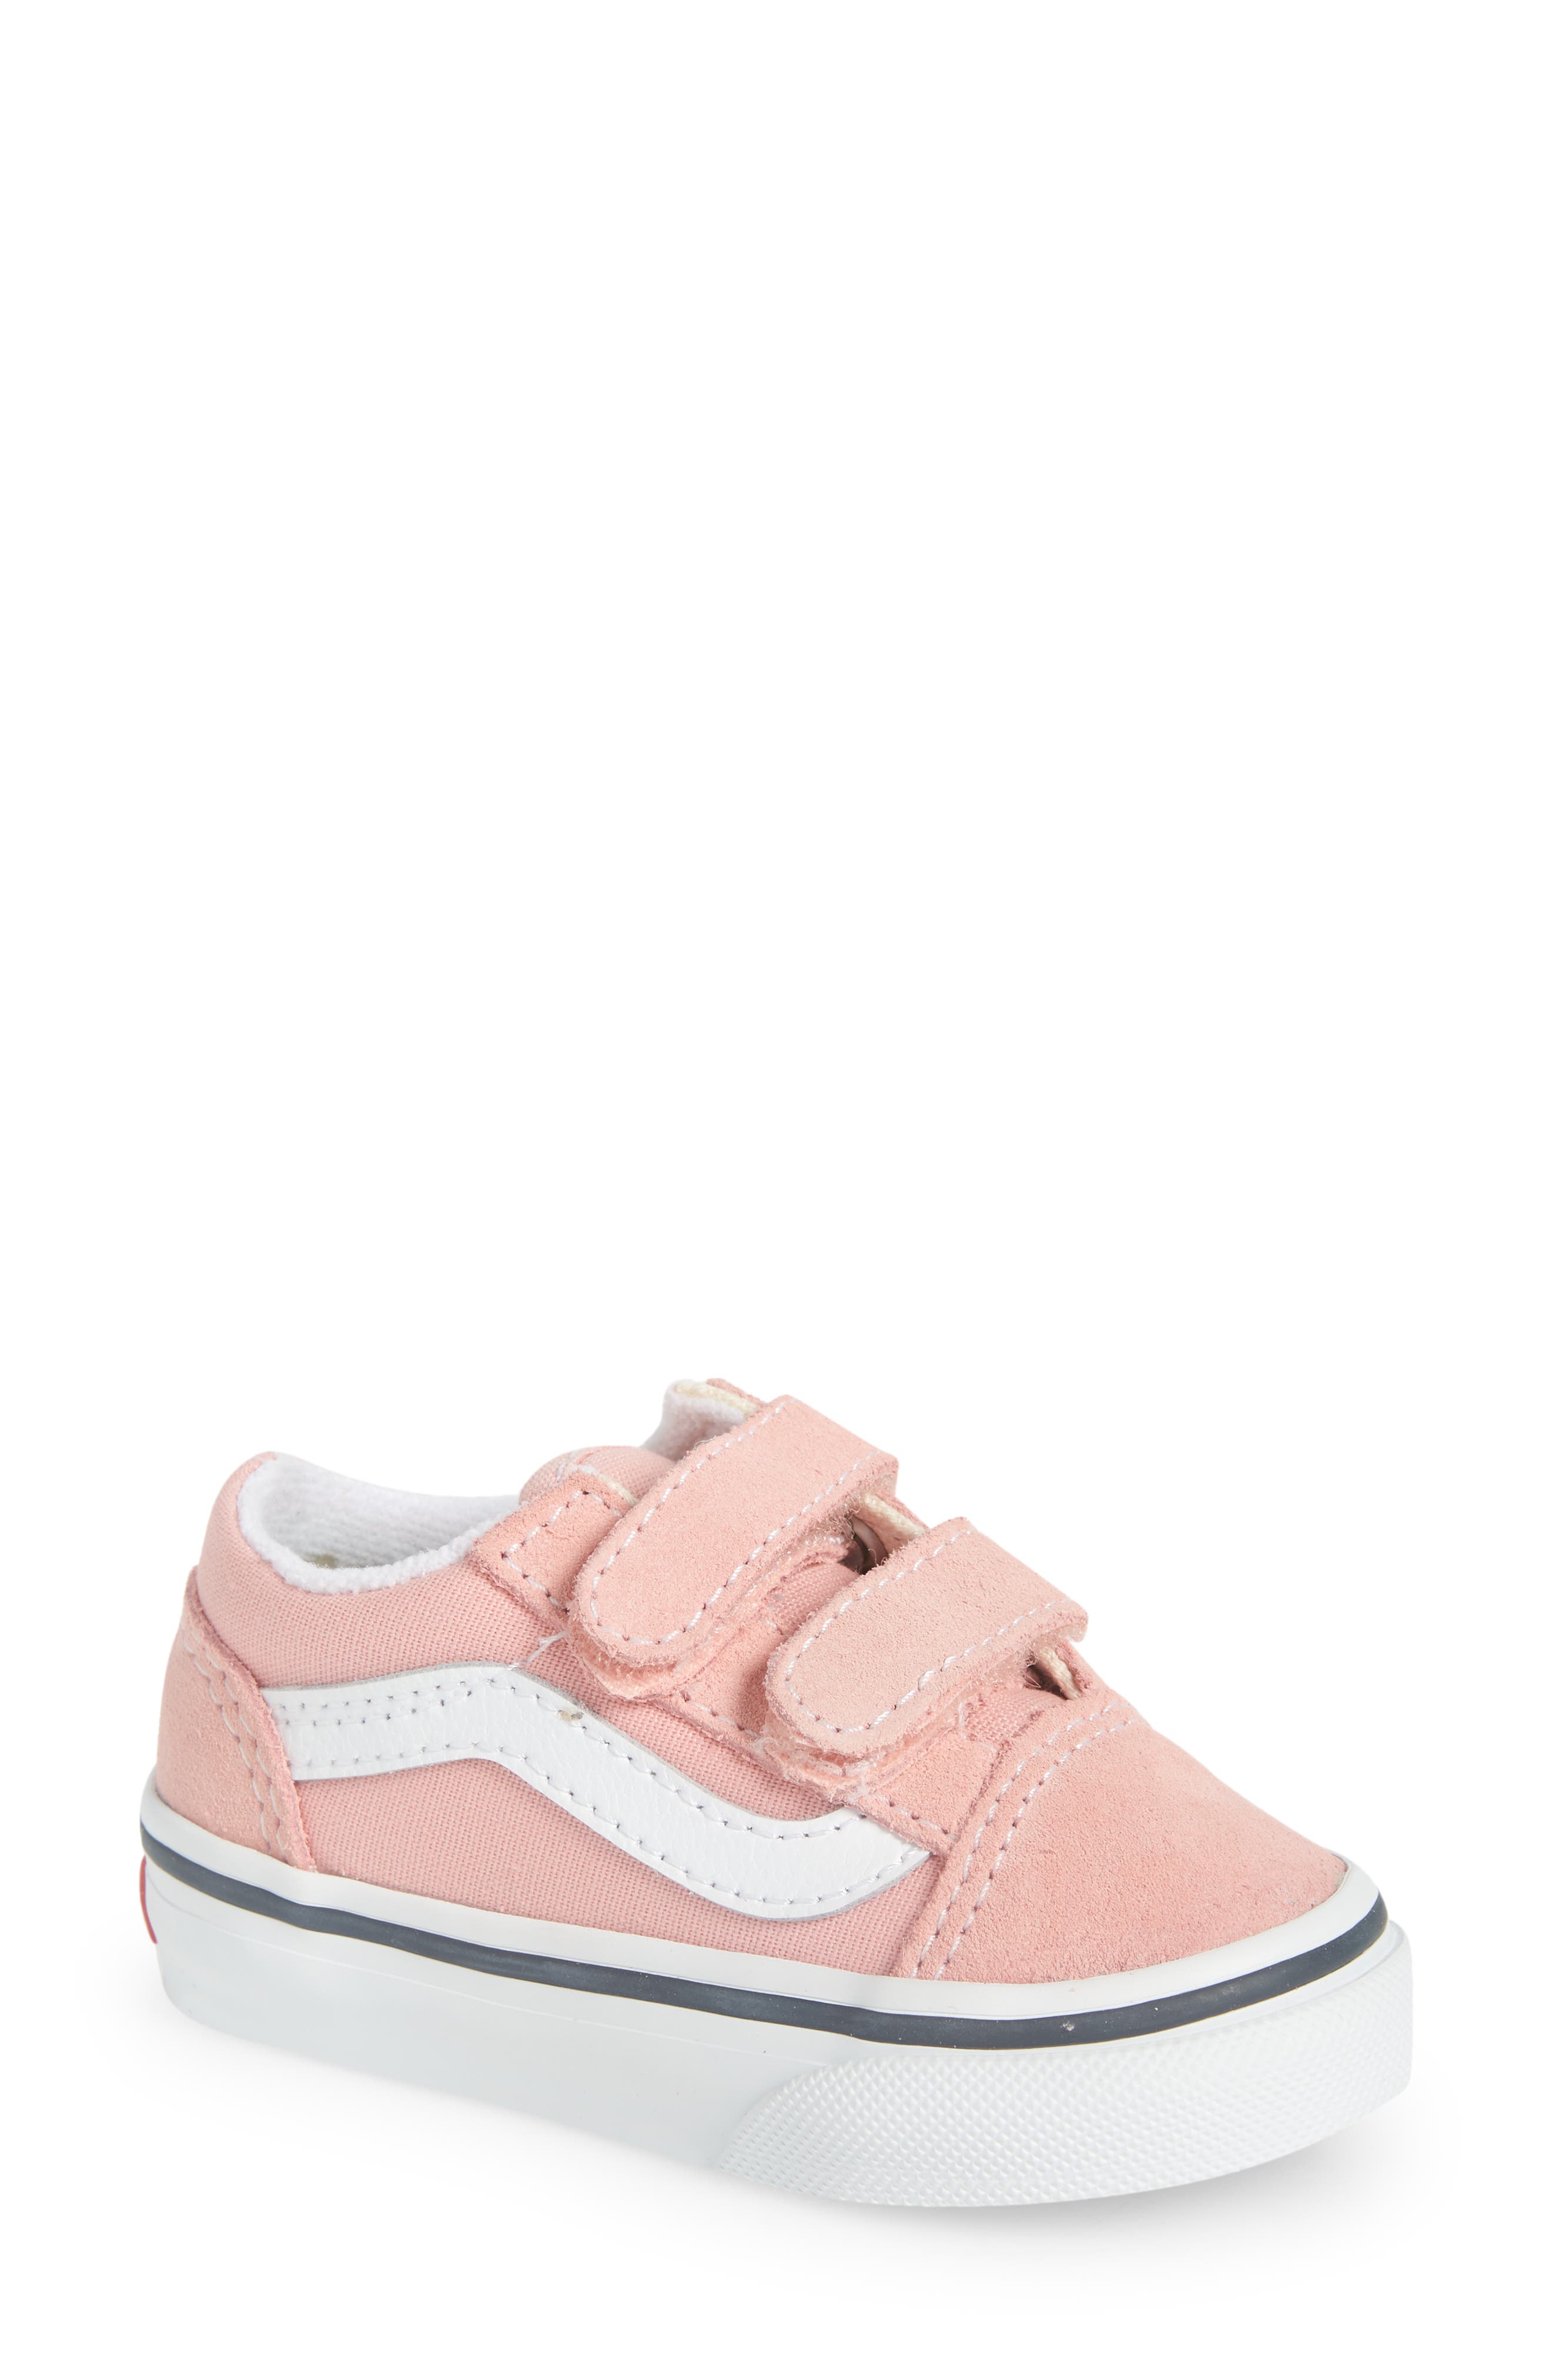 Toddler Girls' Vans Shoes (Sizes 7.5-12)